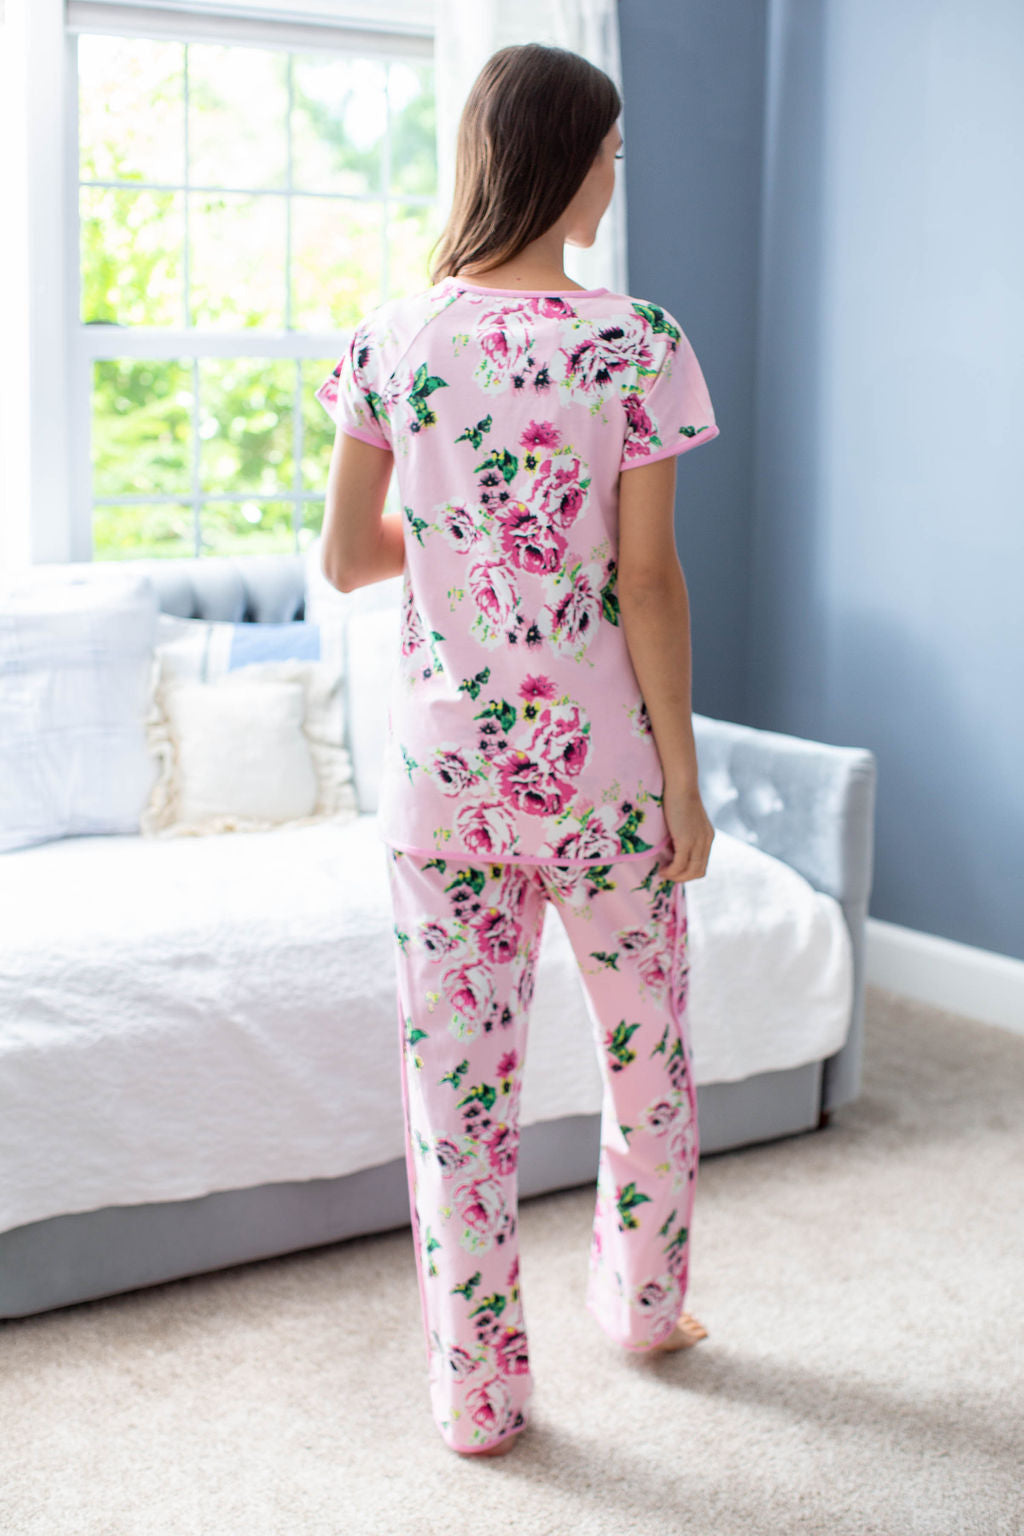 Amelia Maternity Nursing Pajamas